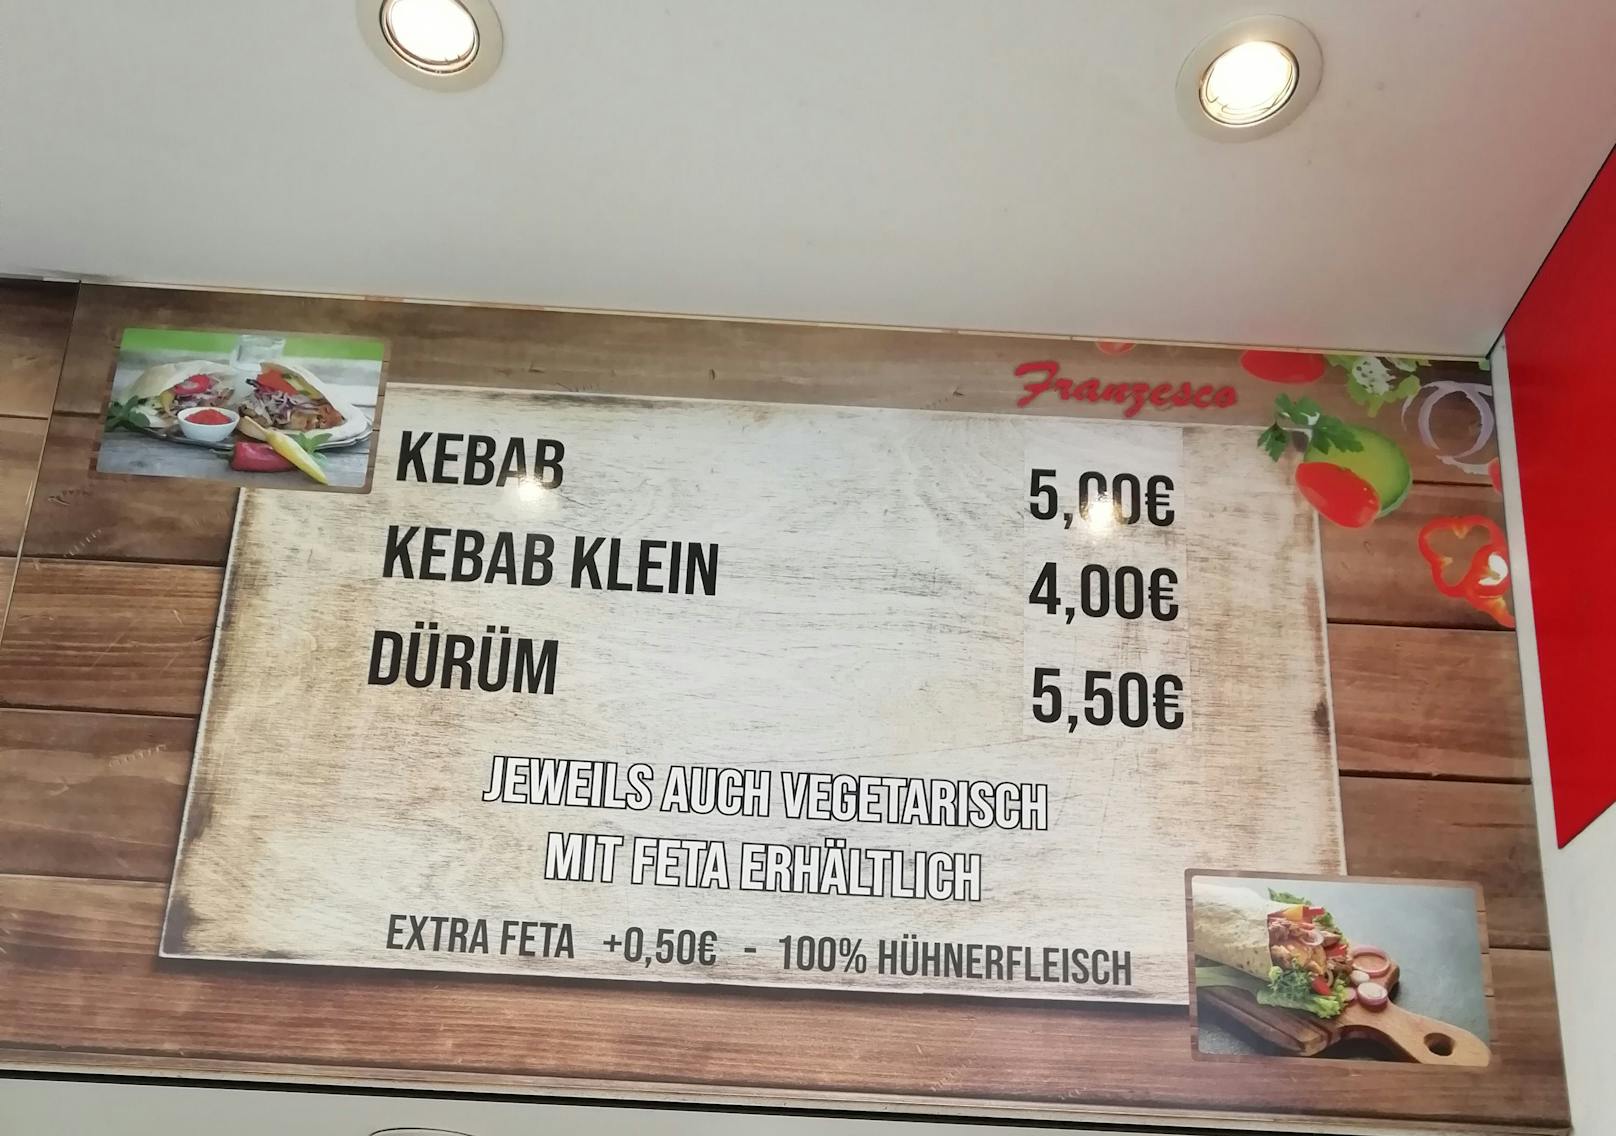 5 Euro kostet ein Kebab in der Linzer Pizzeria Franzesco.